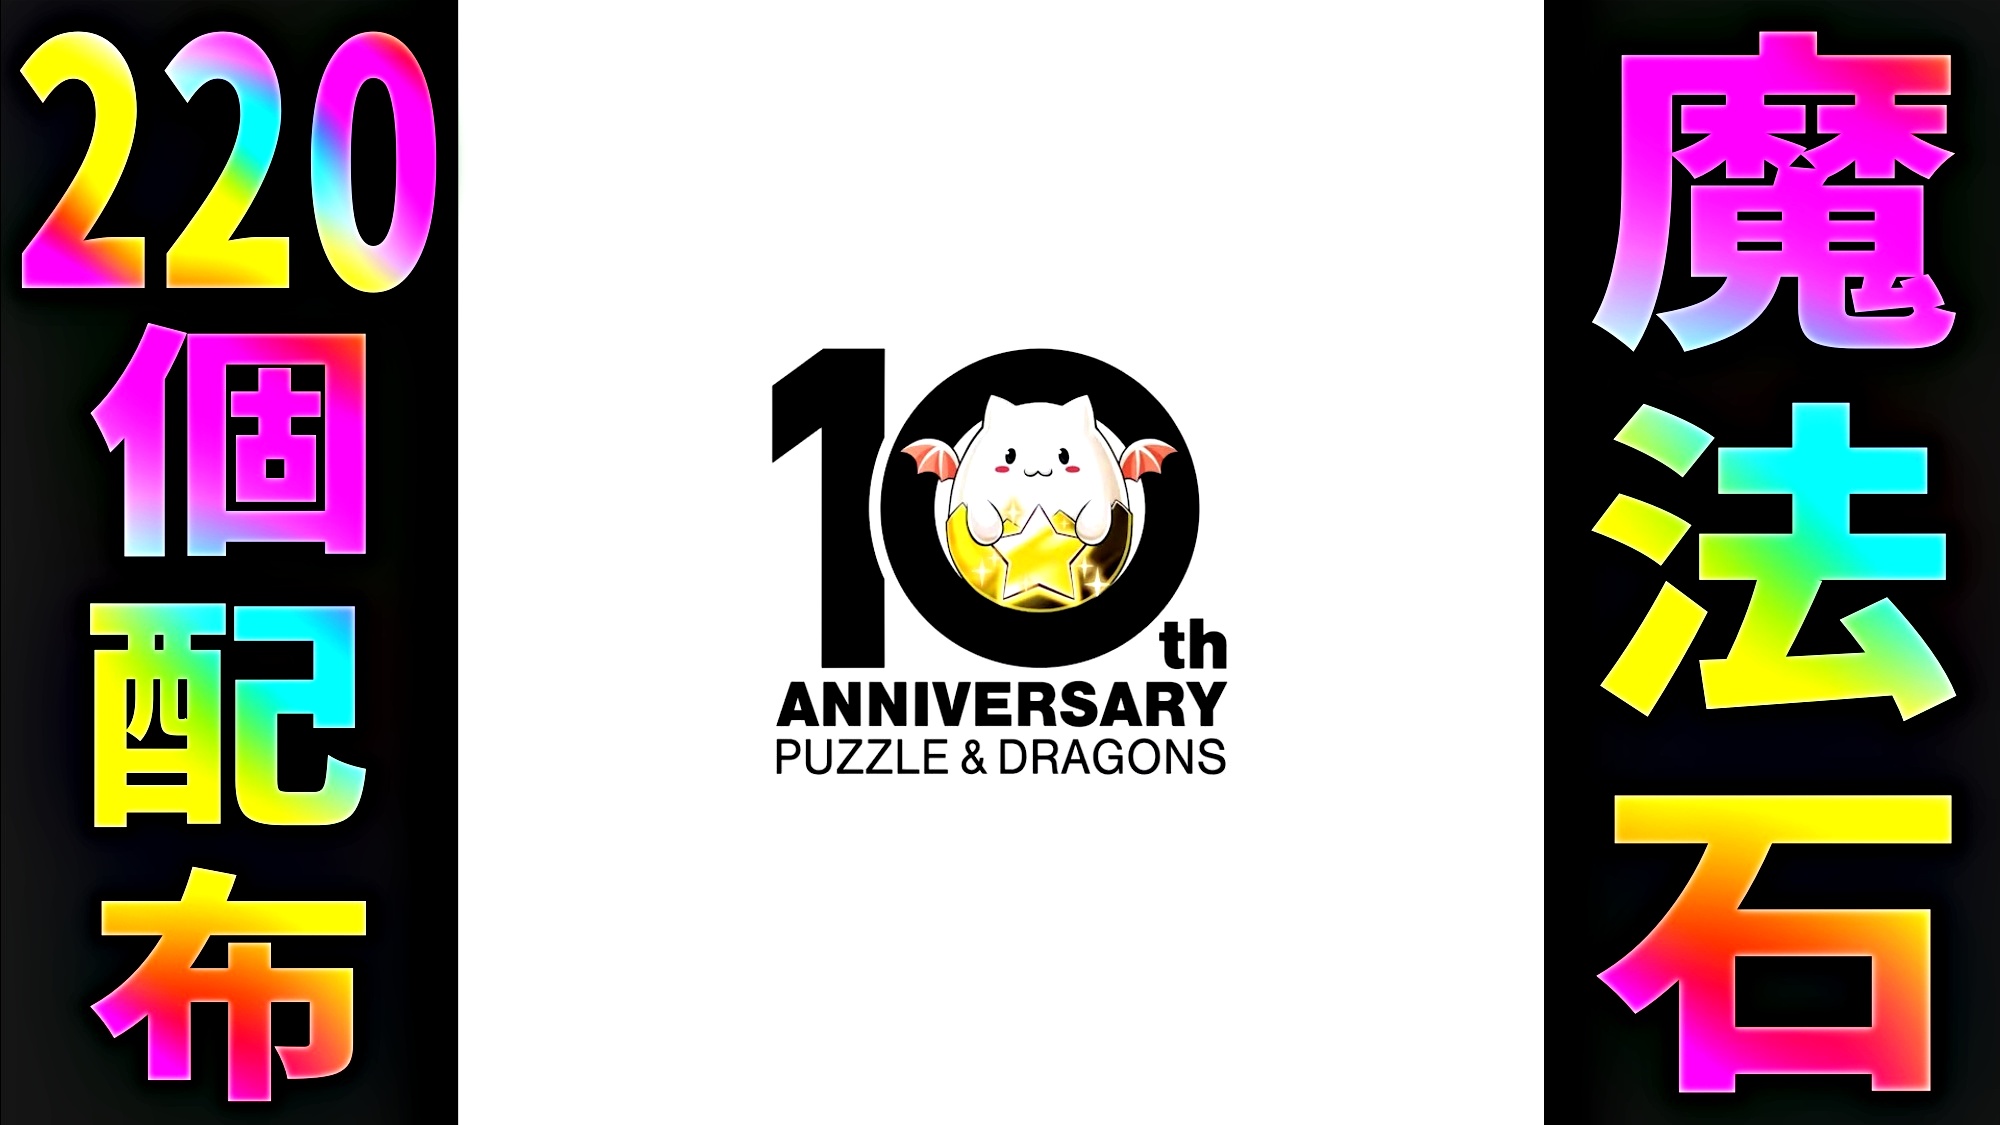 【パズドラ】10周年記念『魔法石220個』配布決定! テレビでも遊べるパズドラなど情報多数!